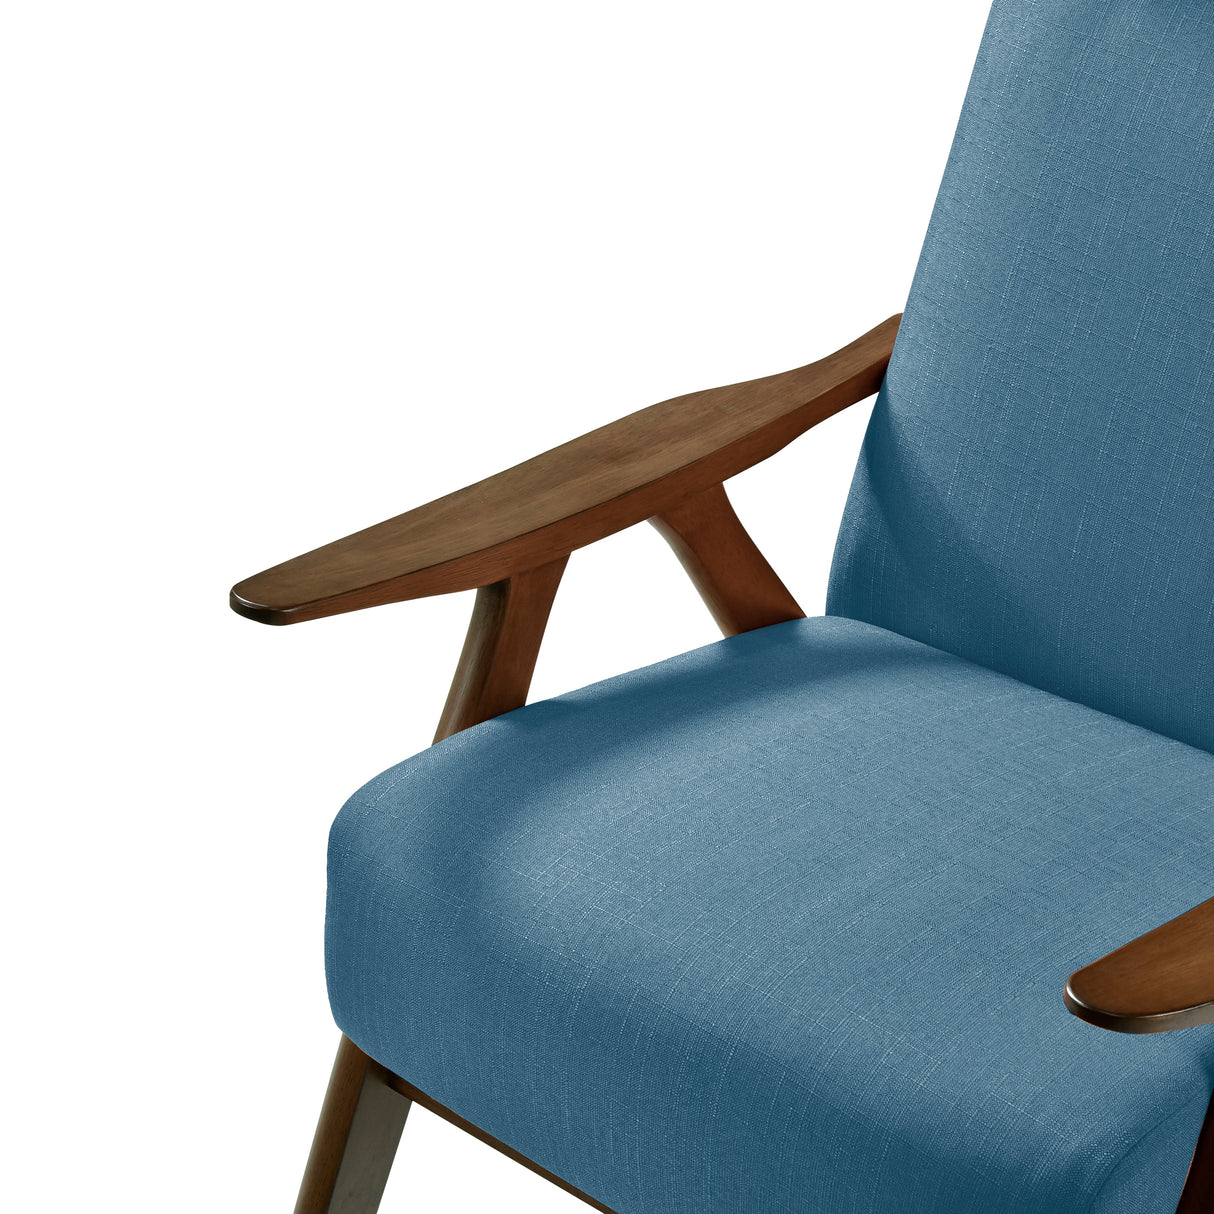 Kalmar Blue Accent Chair